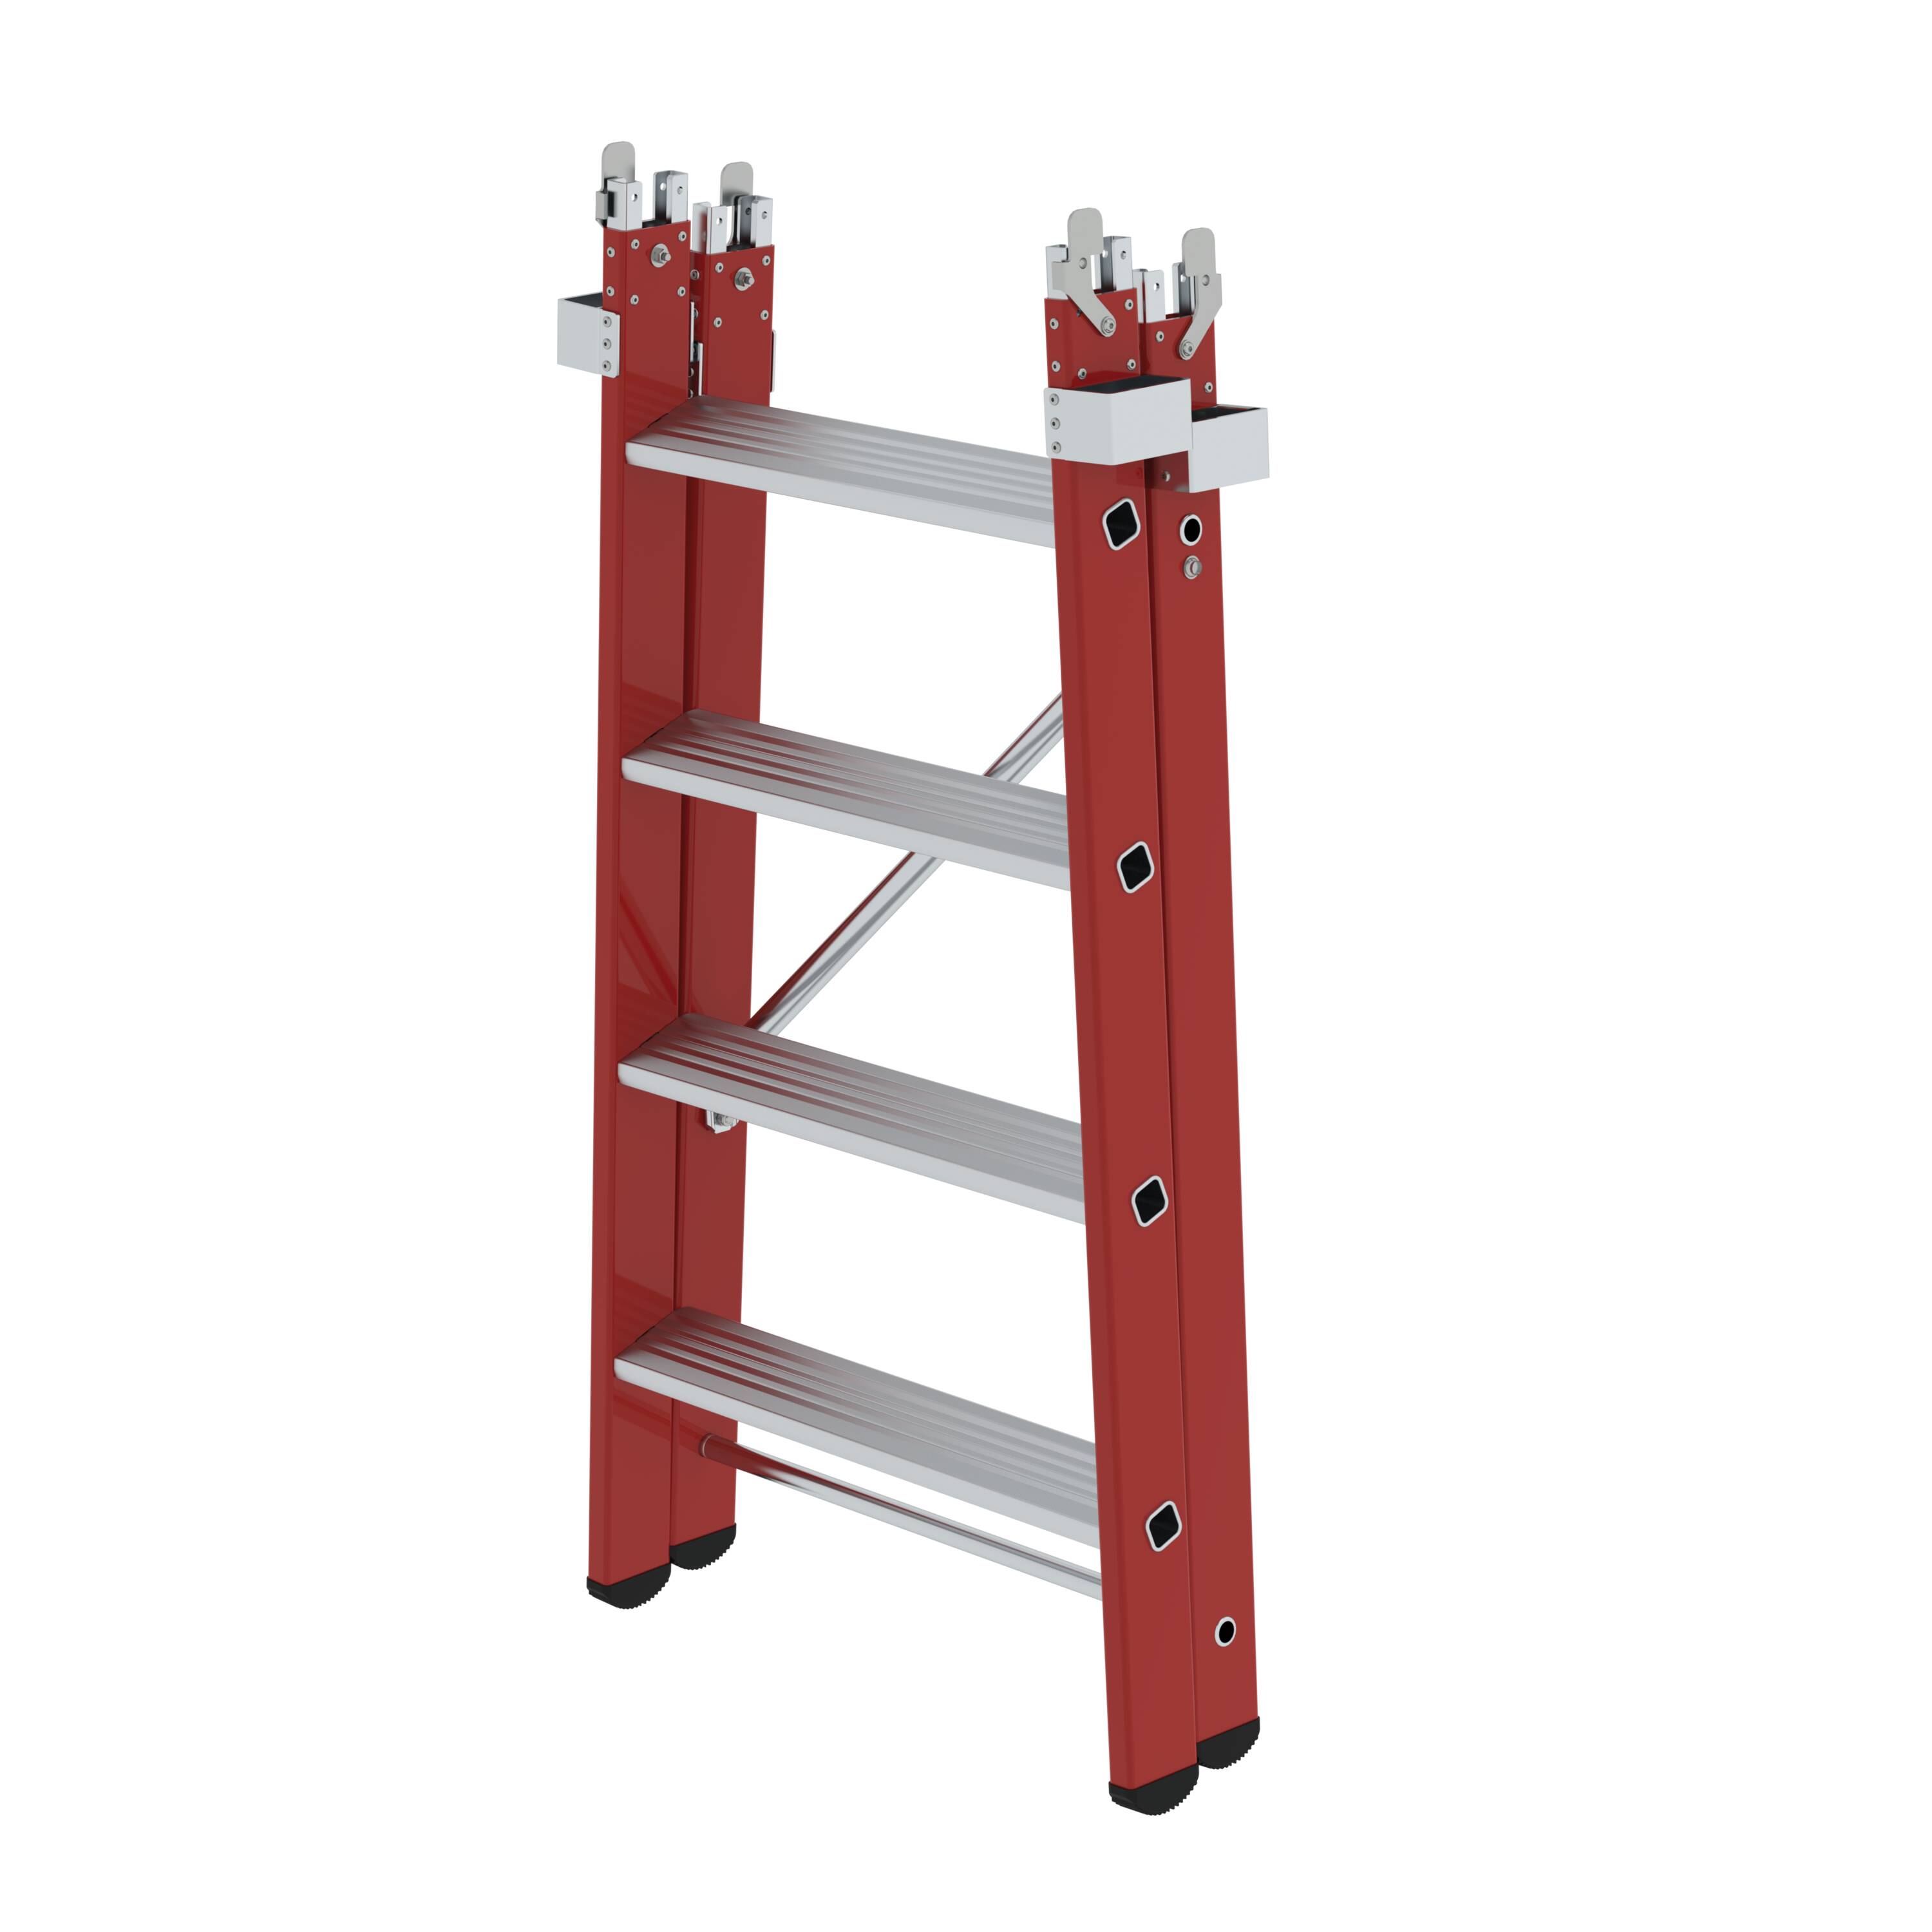 Einsteckteil für Plattformleiter steckbar plus 4 Stufen